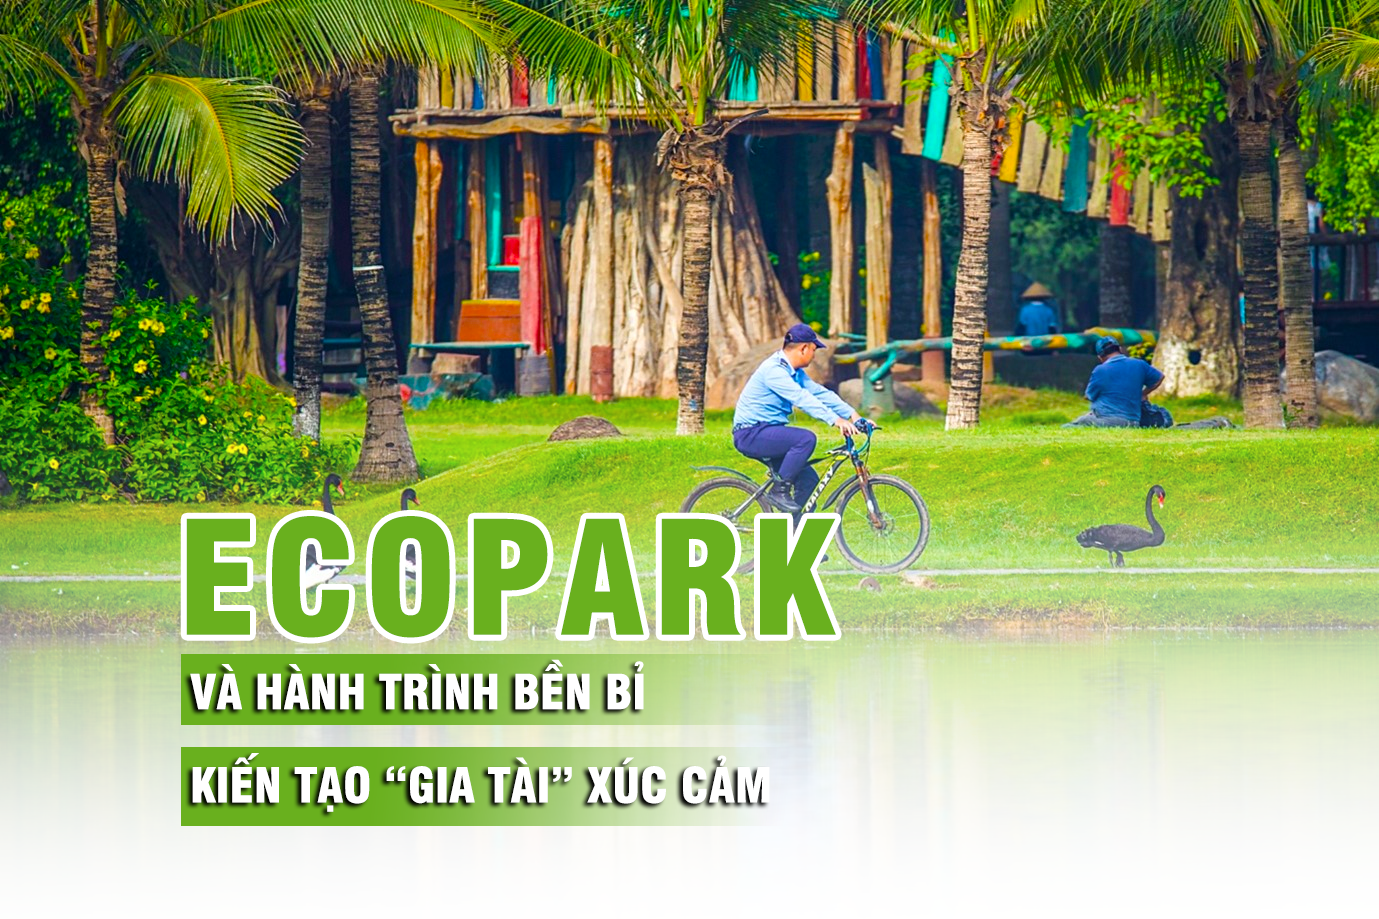 Ecopark và hành trình bền bỉ kiến tạo “gia tài” xúc cảm - Ảnh 1